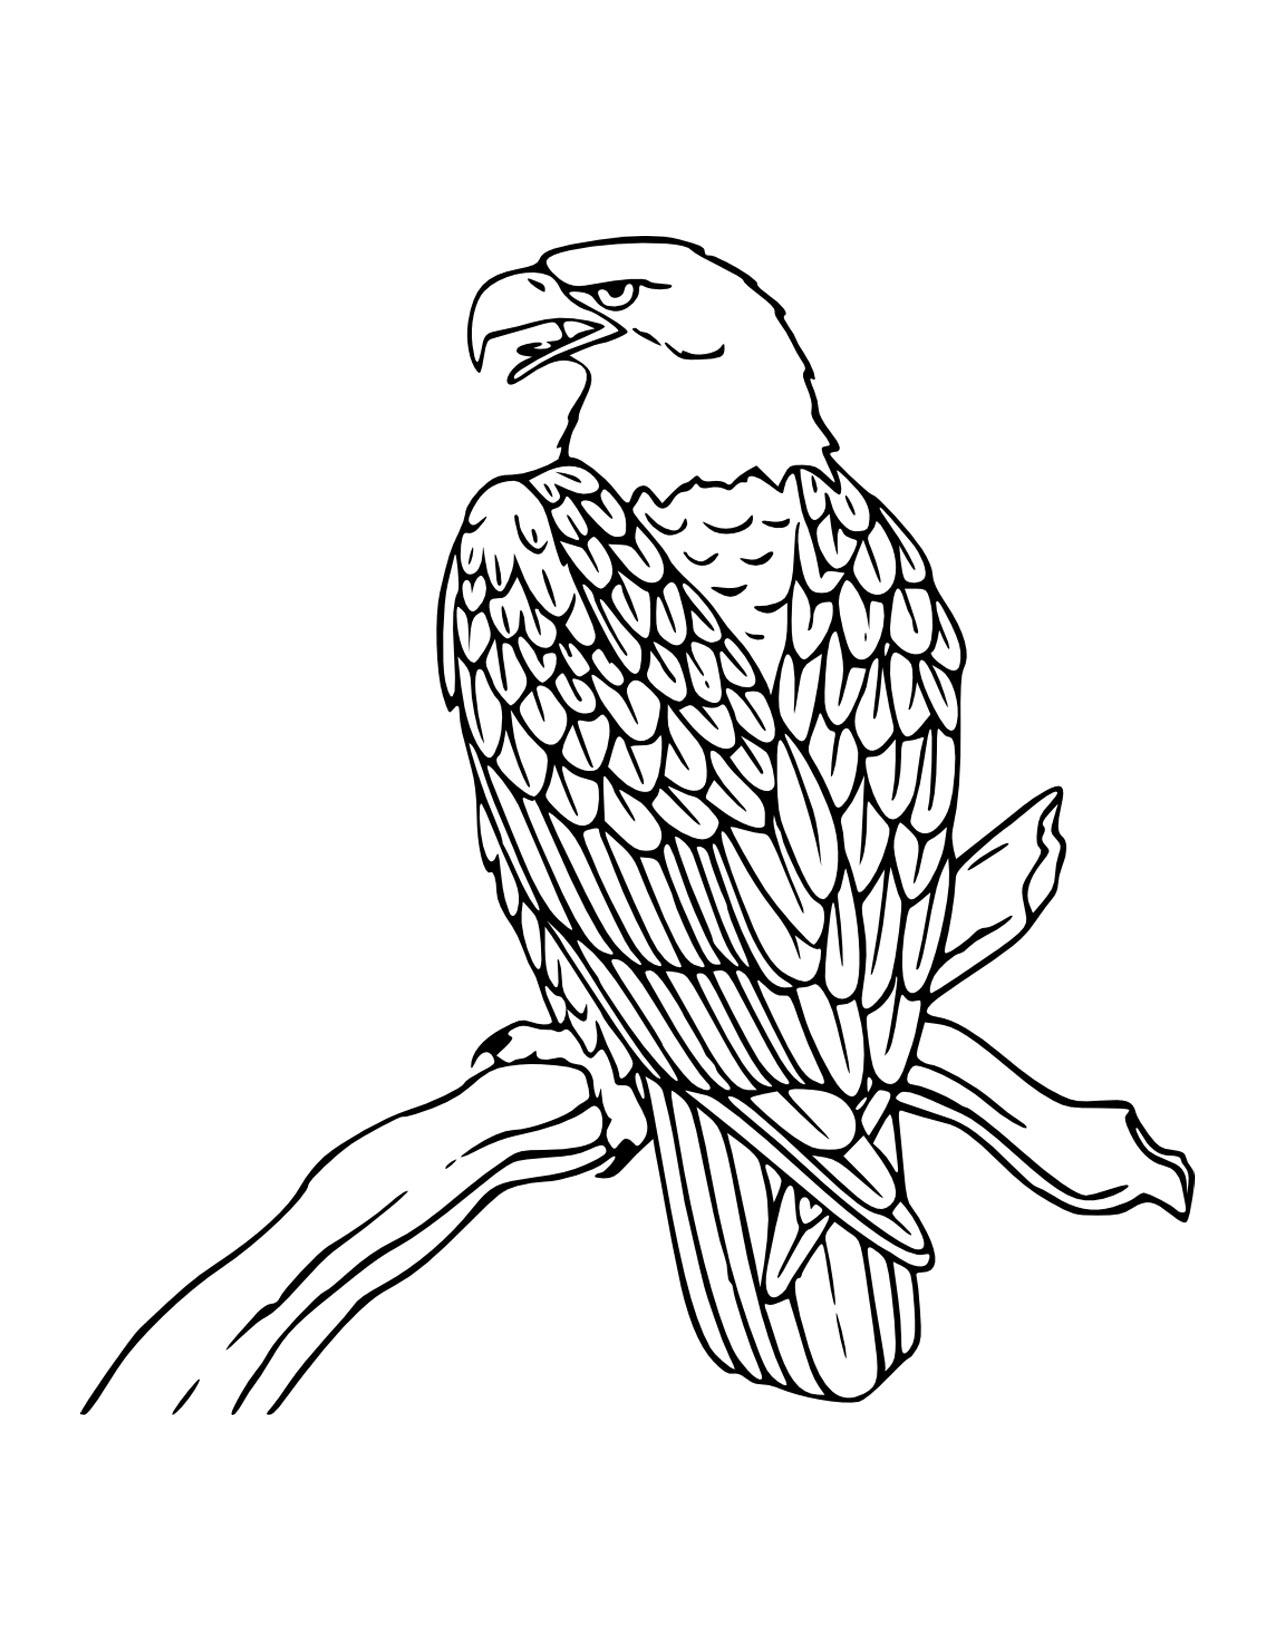 Adler Ausmalbilder 1832